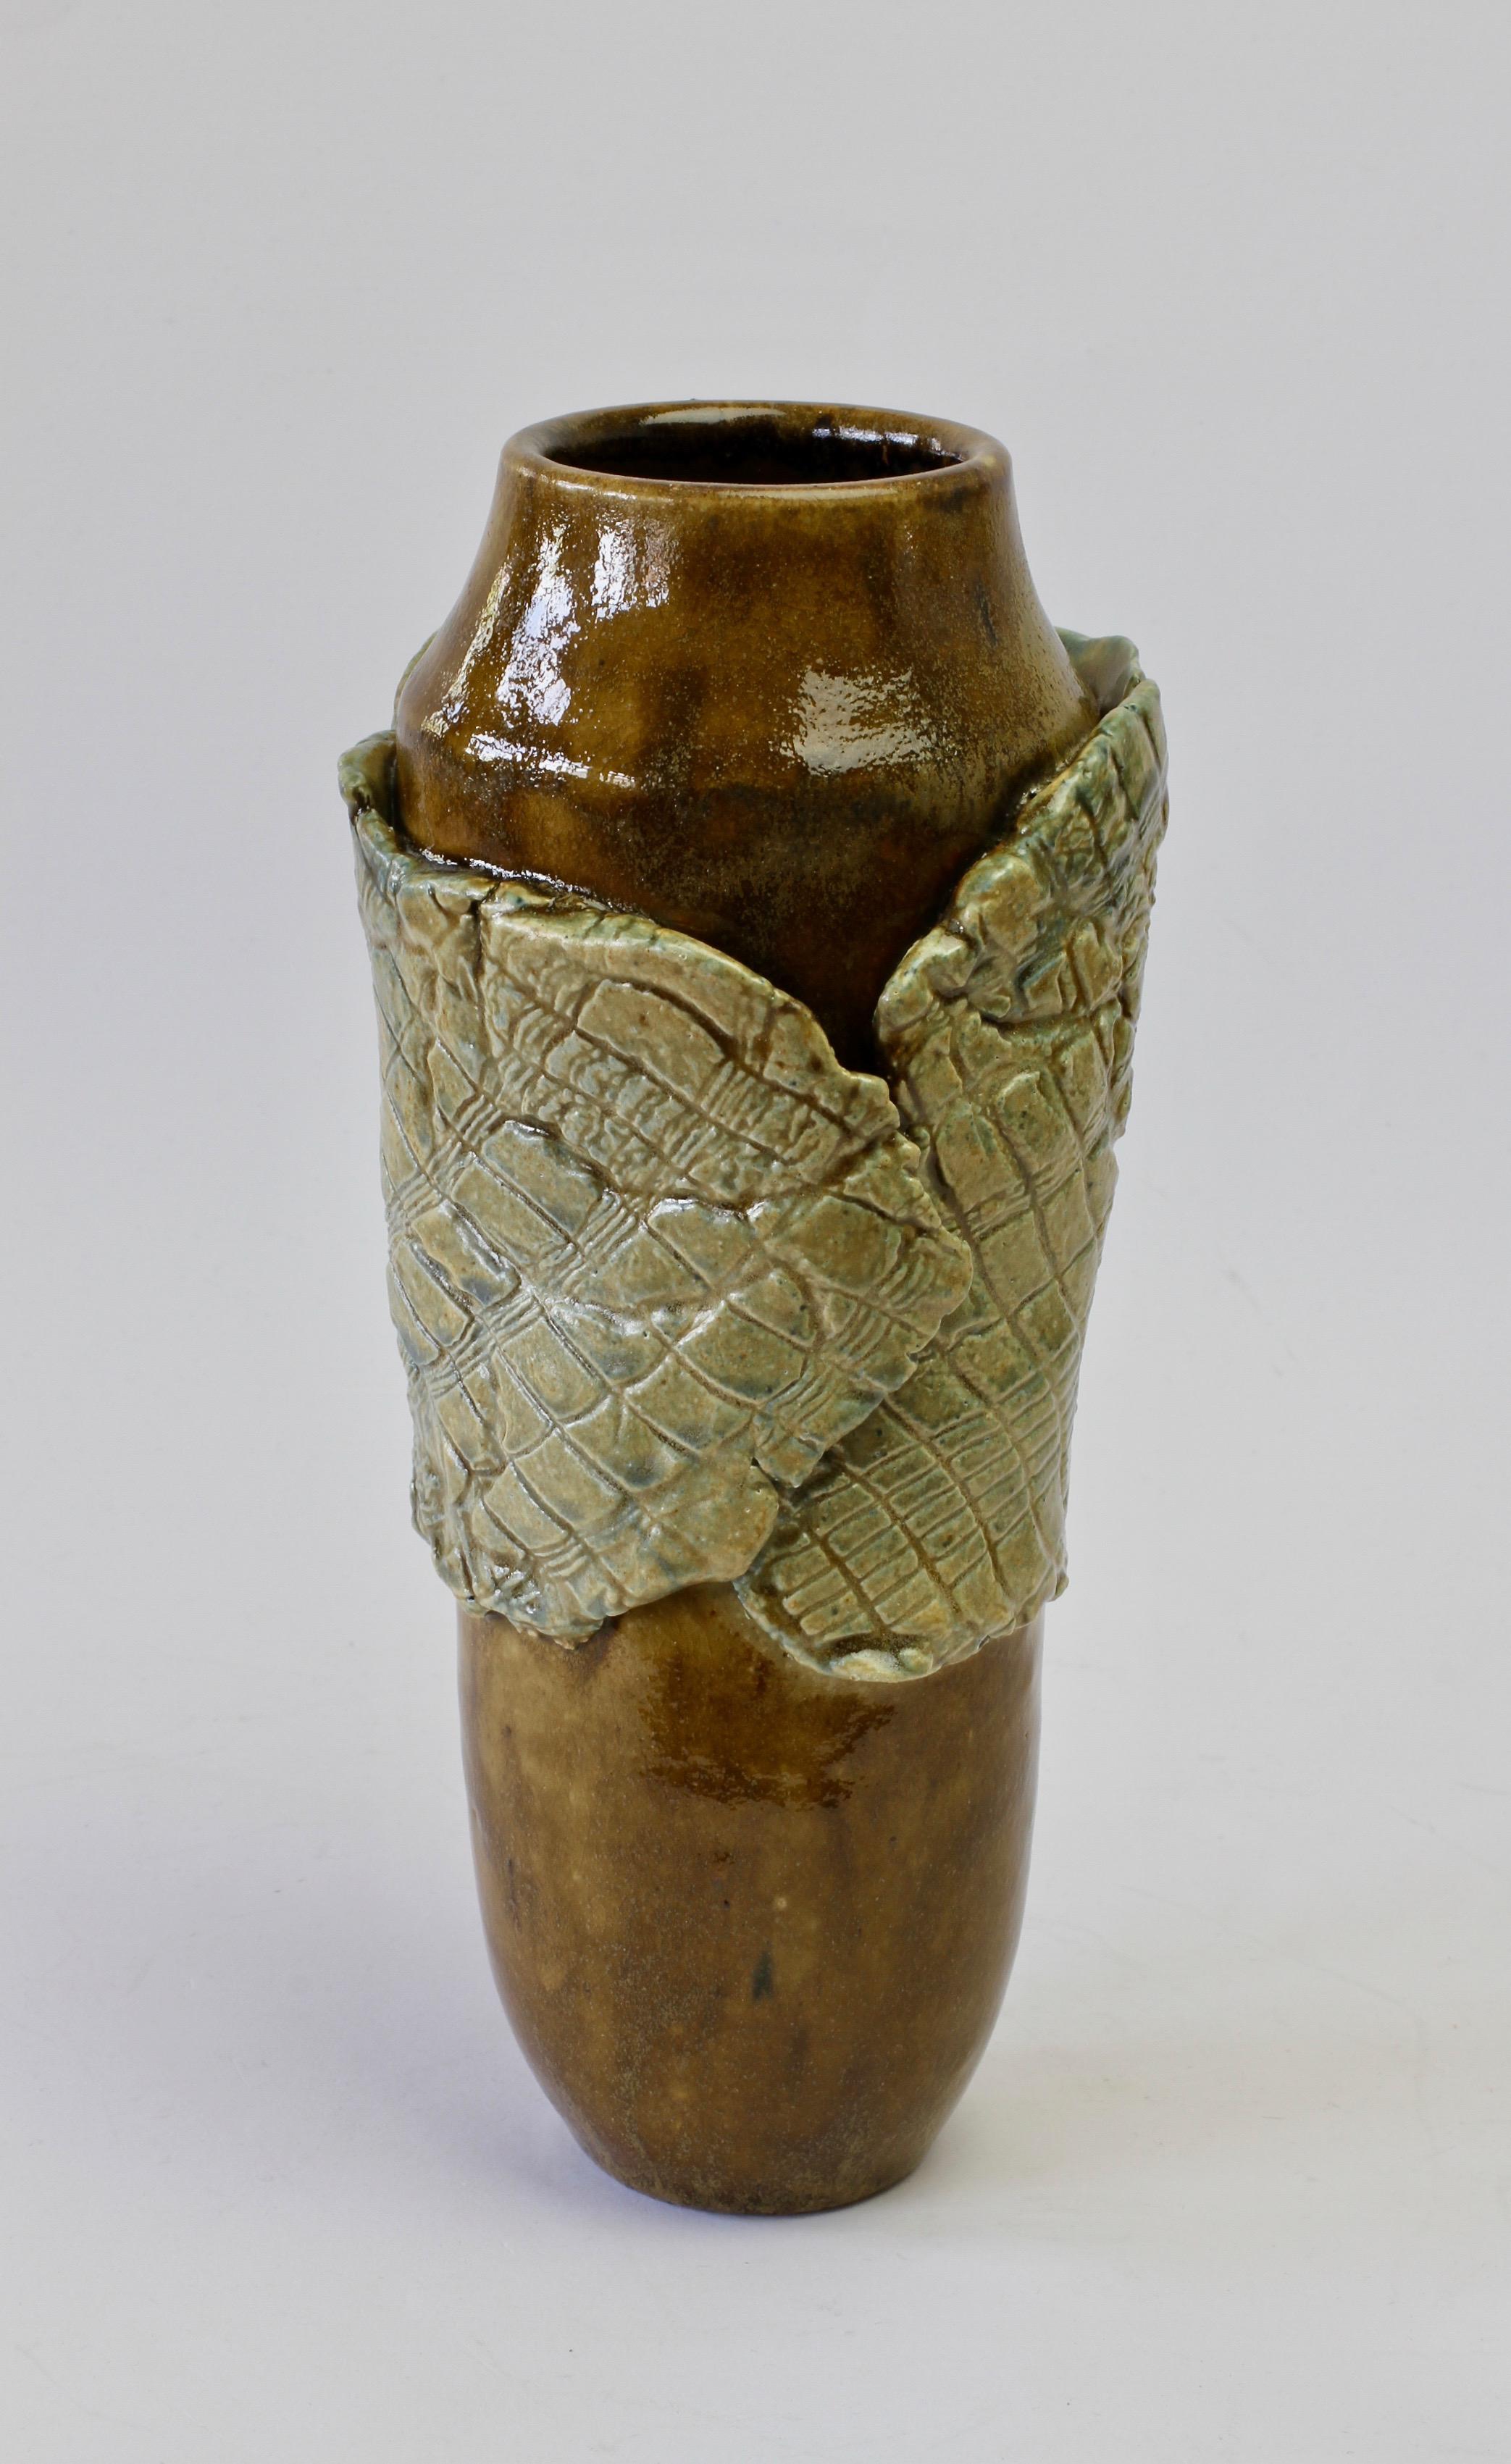 Signierte Vase aus europäischer Studiokeramik von Signe Pistorious-Lehmann (1925-2012). Schöne organische Form, die mit der holzähnlichen braunen Glasur der Vase, die von einem großen grünen Blatt umhüllt ist, auf die natürlichen Formen von Pflanzen